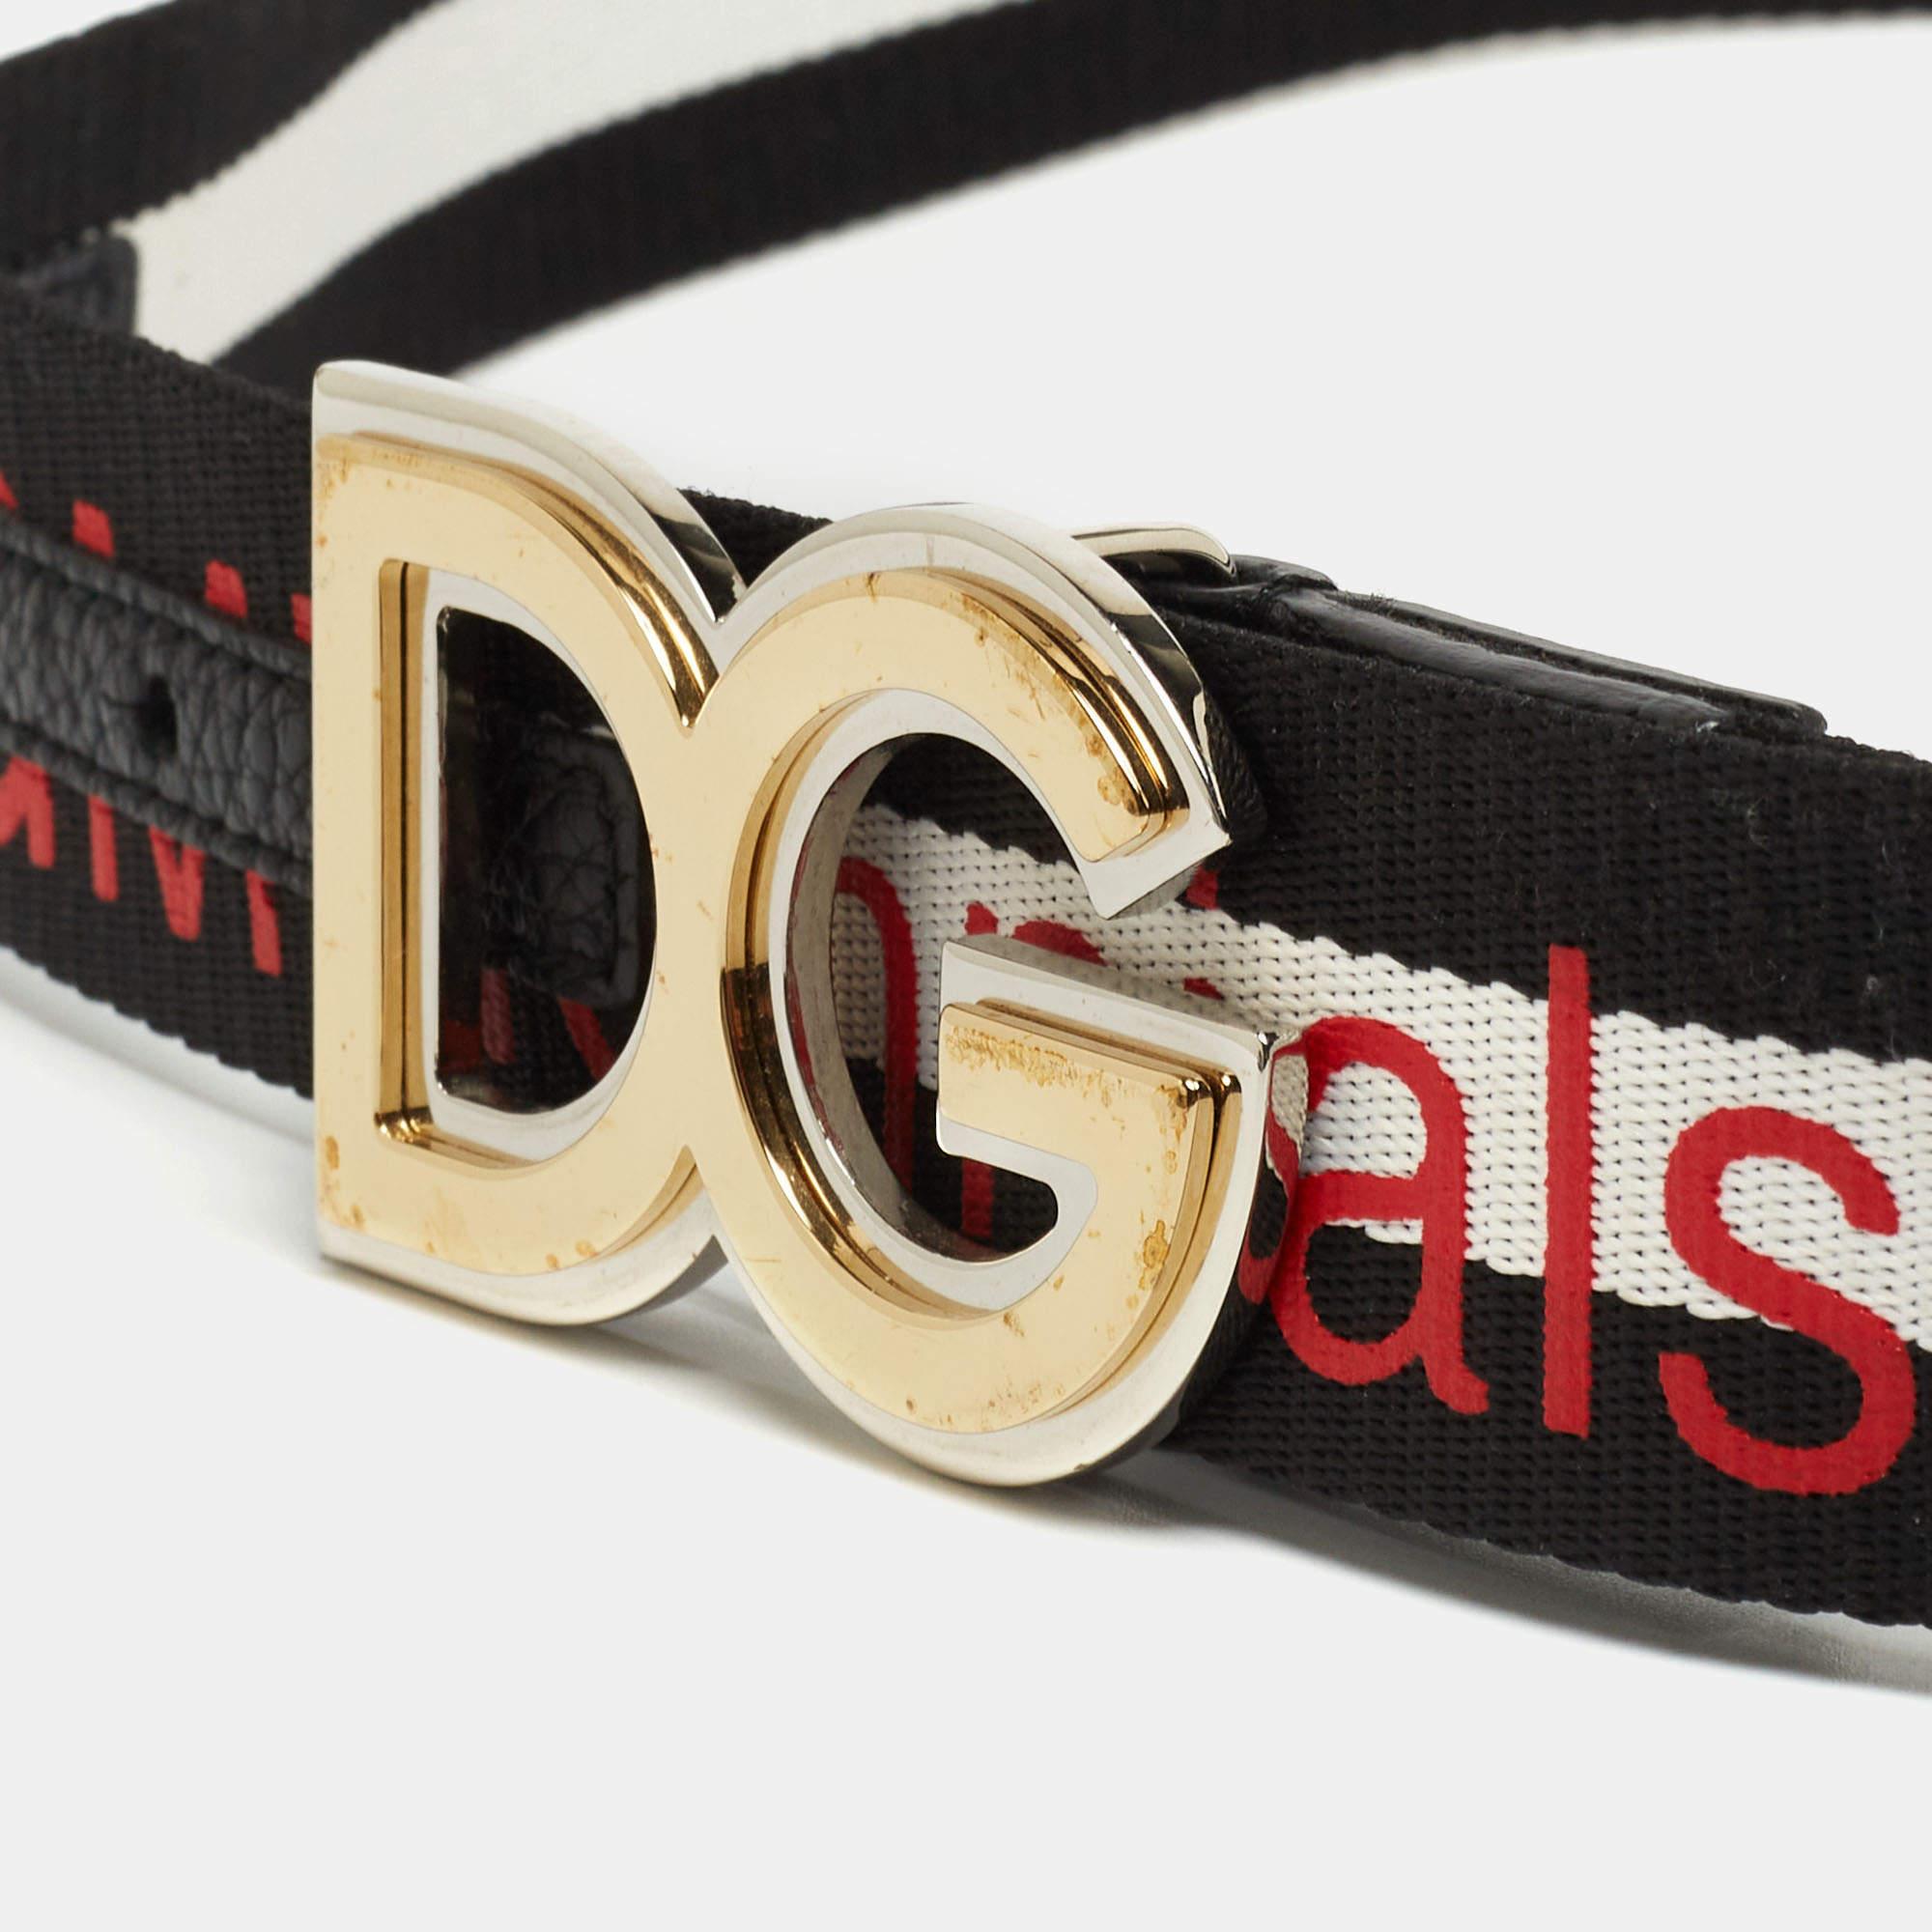 Dieser Gürtel von Dolce & Gabbana ist mit seiner charakteristischen DG-Schnalle absolut fabelhaft. Der Canvas-Gürtel glänzt mit goldfarbener Hardware in Form der charakteristischen Symbole der Marke. Es ist klassisch, stilvoll und perfekt für Sie.

